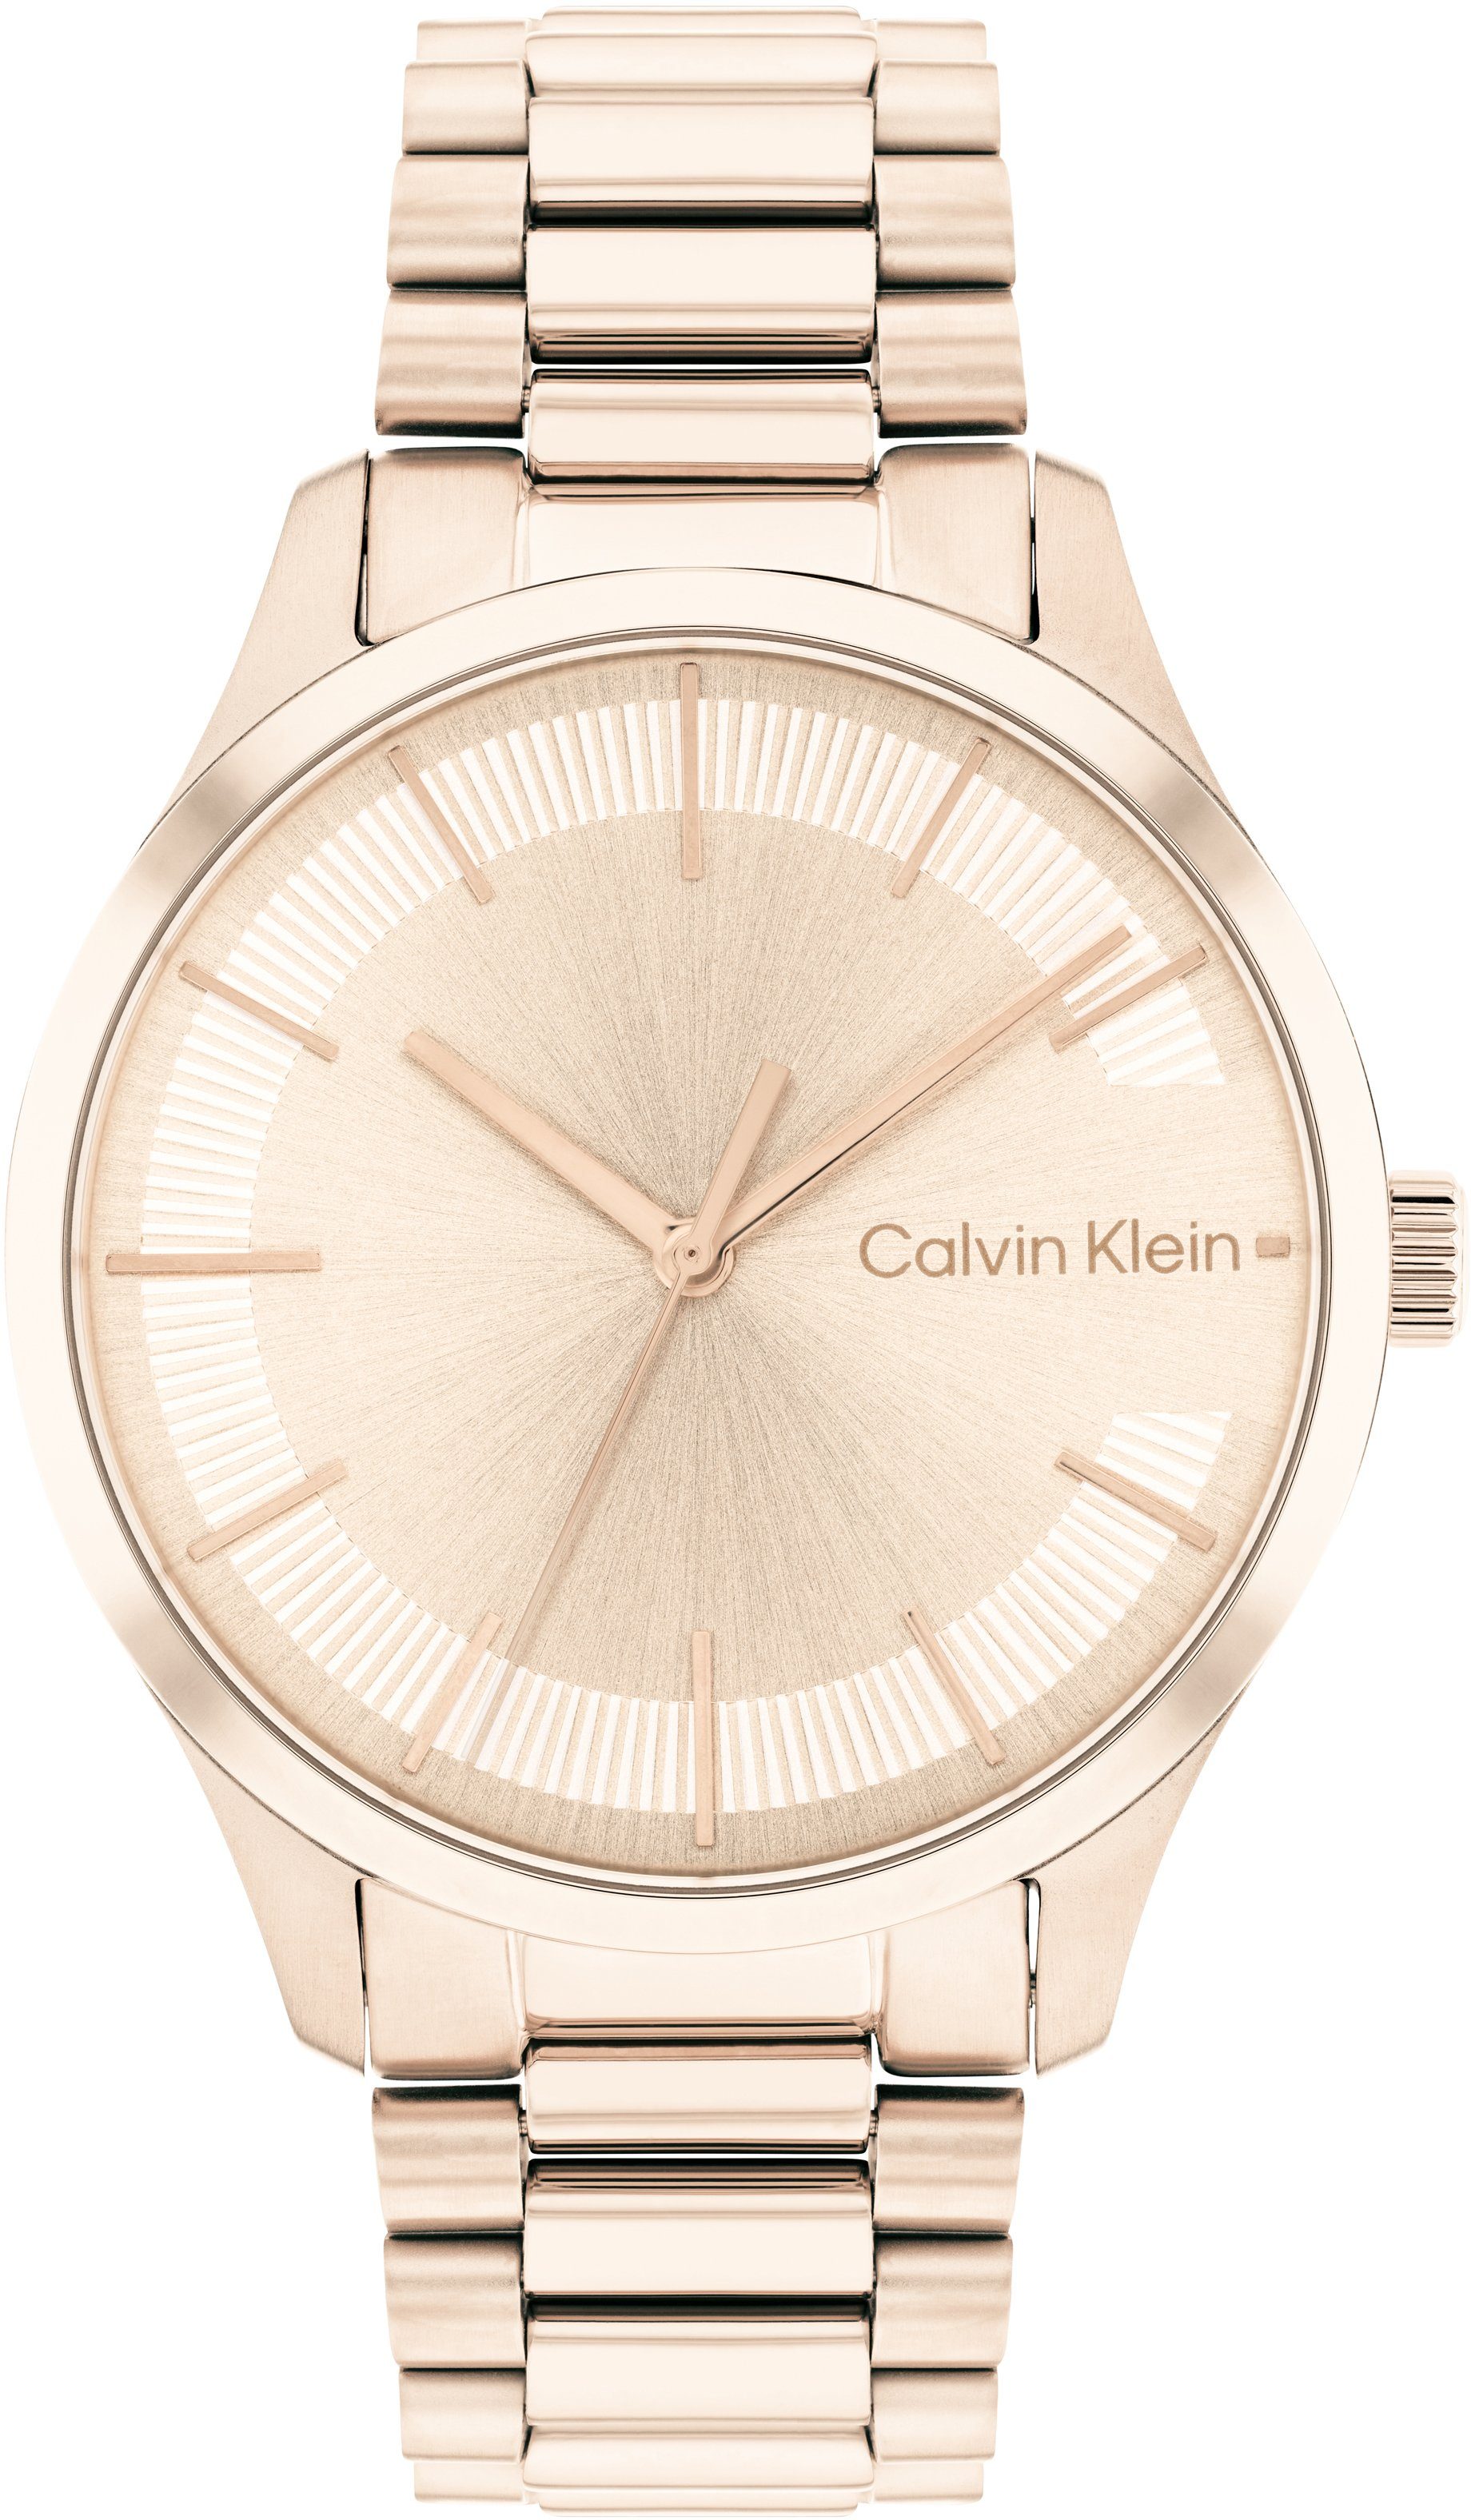 Calvin Klein Quarzuhr Iconic Bracelet 35mm, 25200042, Armbanduhr, Damenuhr, Mineralglas, IP-Beschichtung